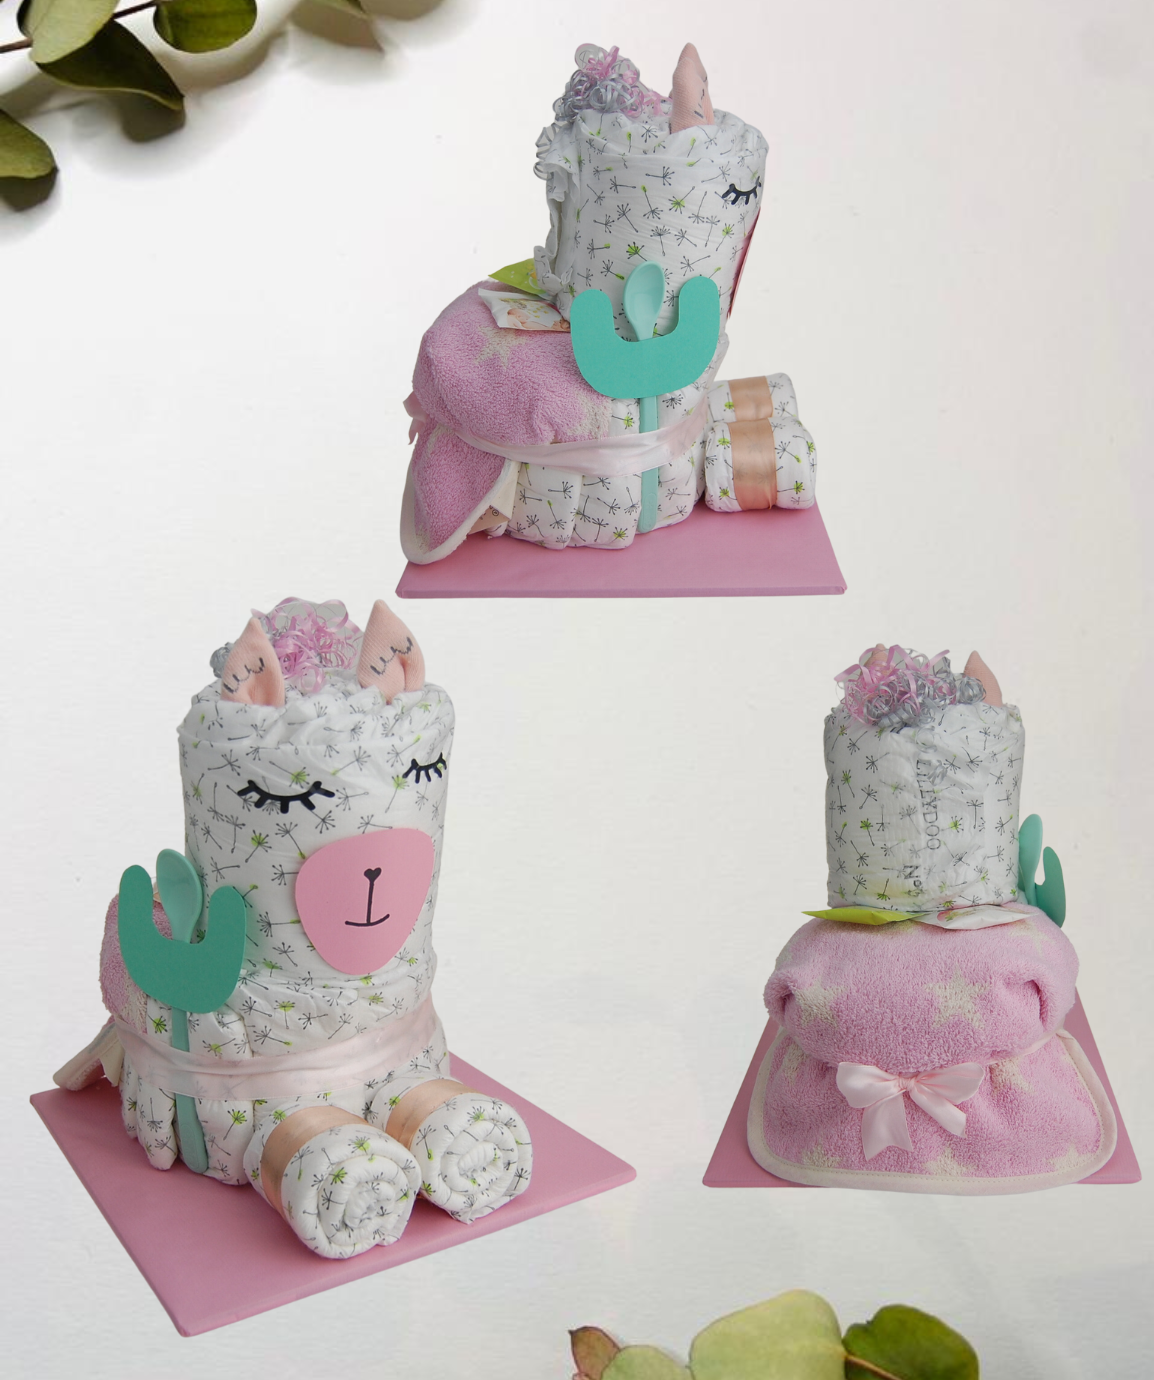 Plenkový dort Lama - v barvě dle vlastního výběru